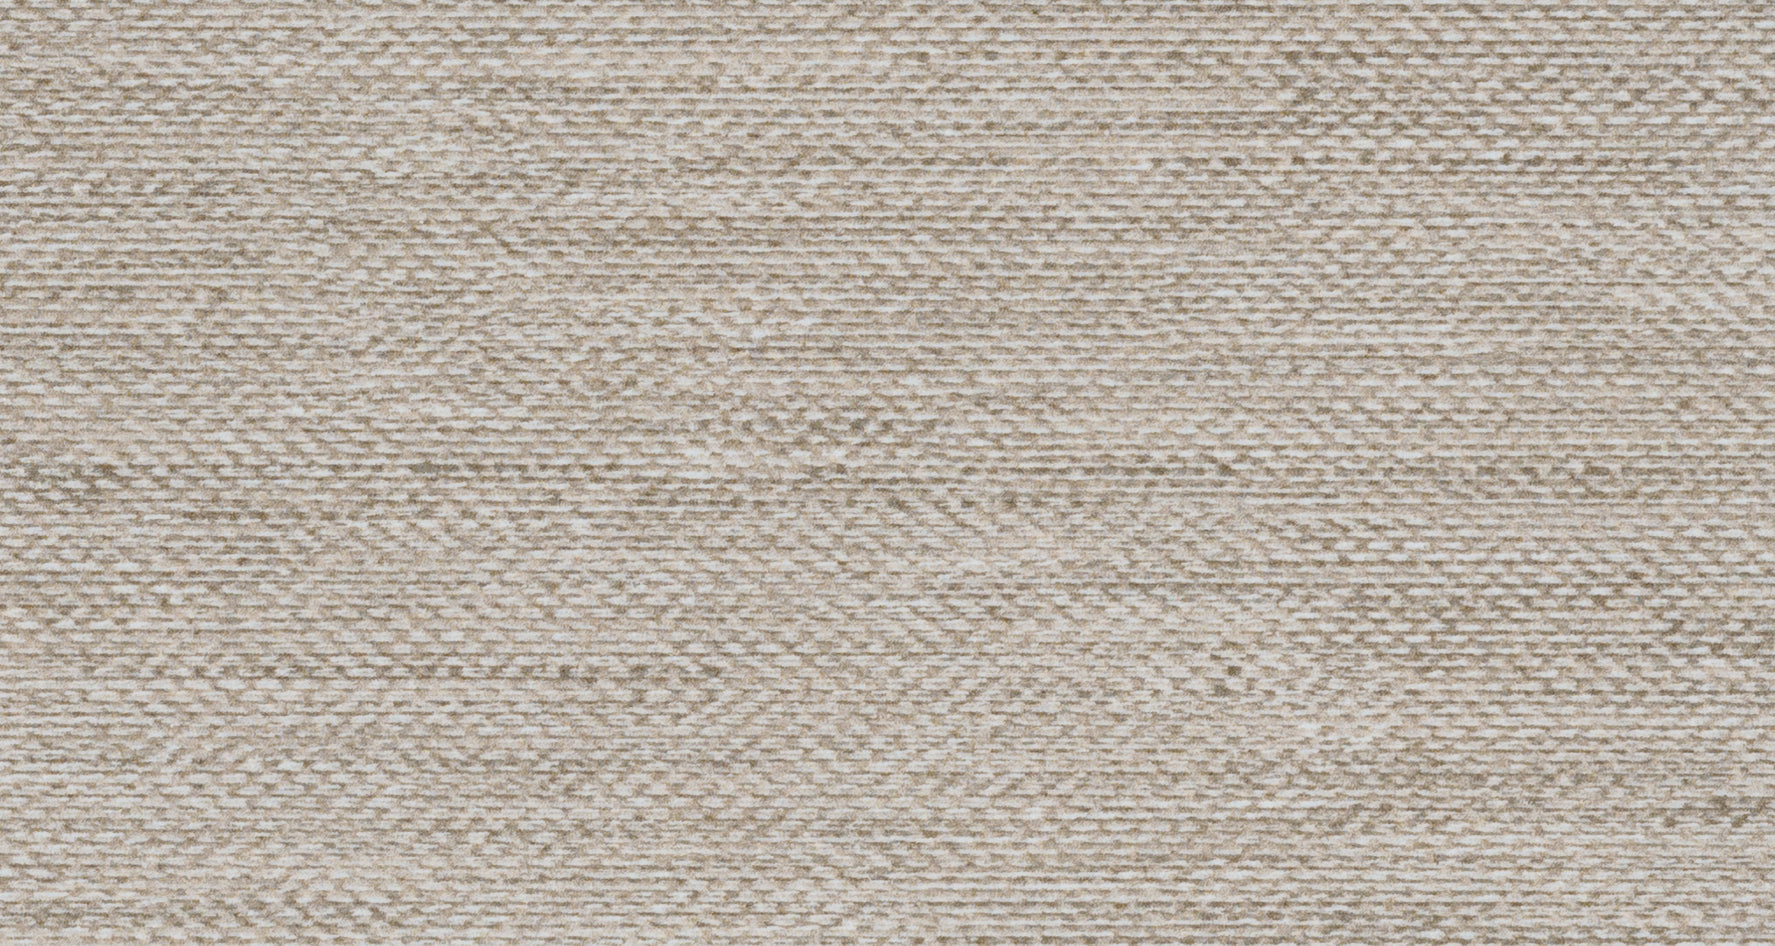 Tesoro Craft Rope Matte & Textured Porcelain Tile